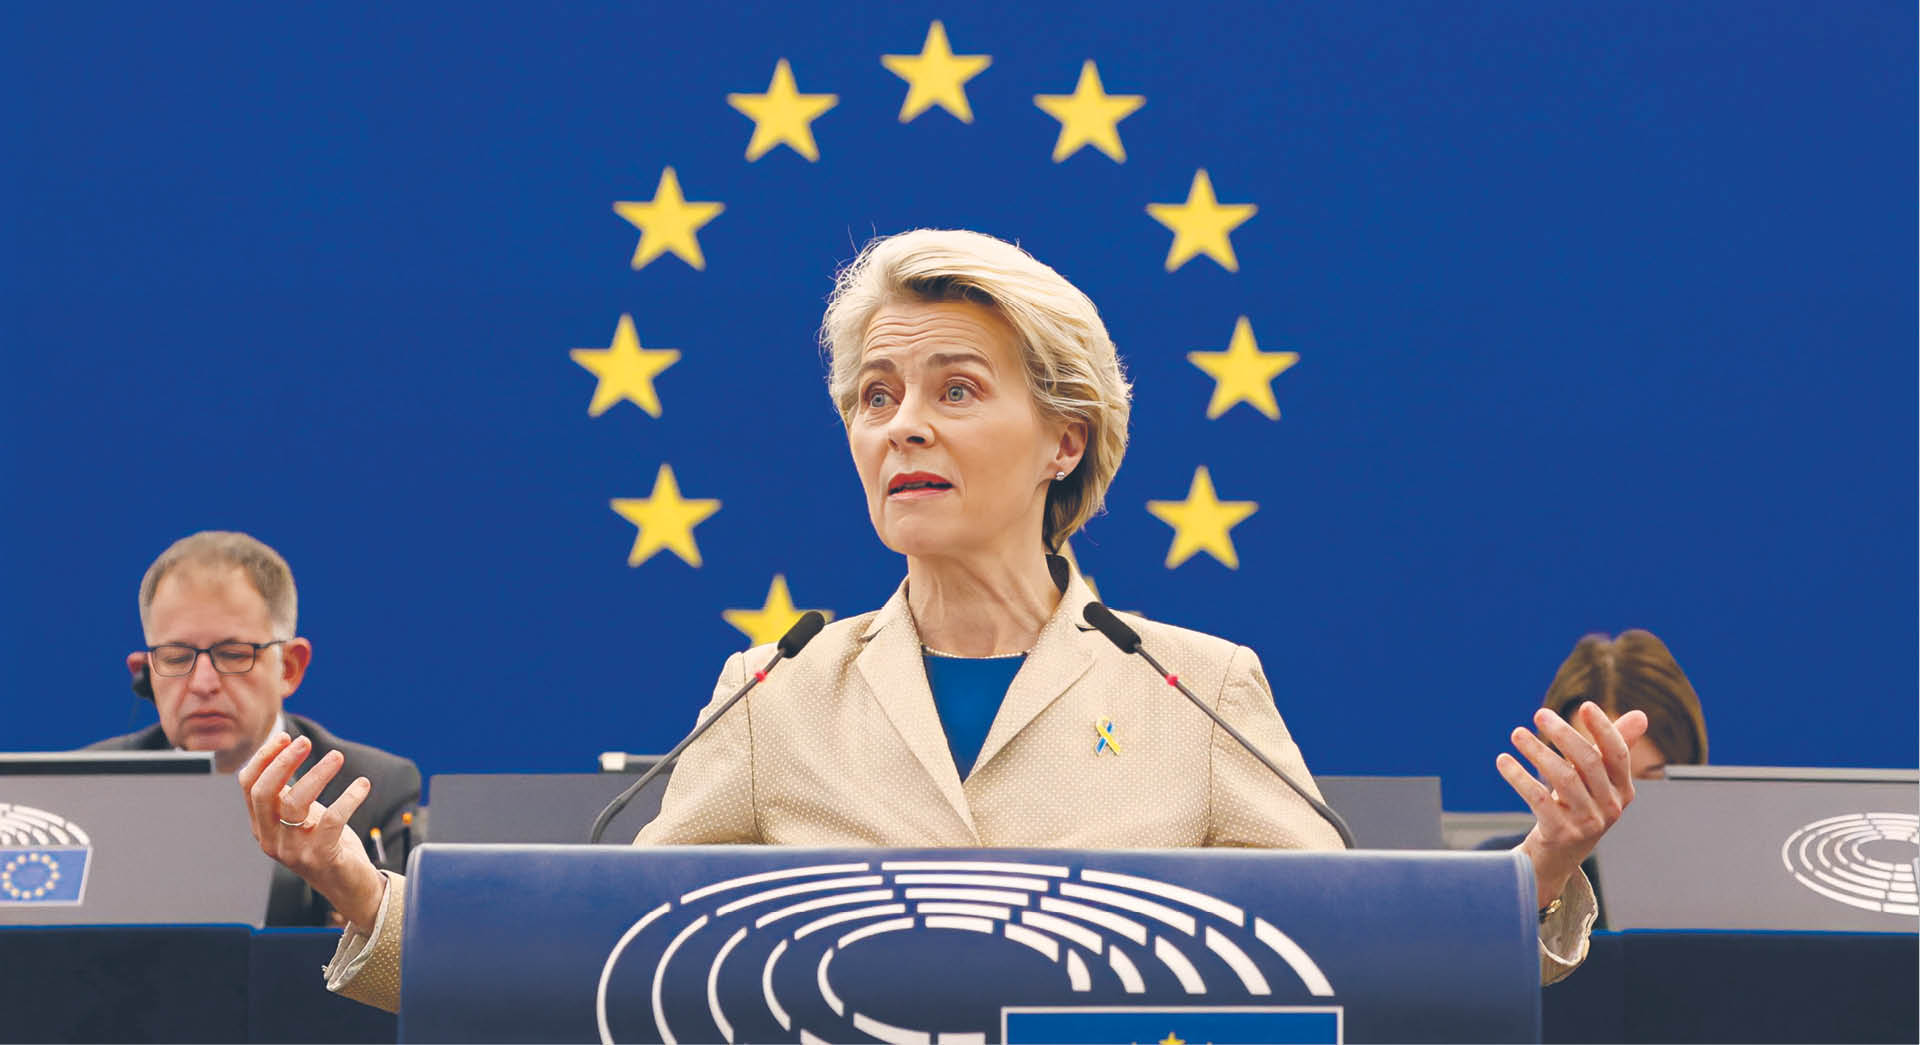 Szefowa Komisji Europejskiej Ursula von der Leyen